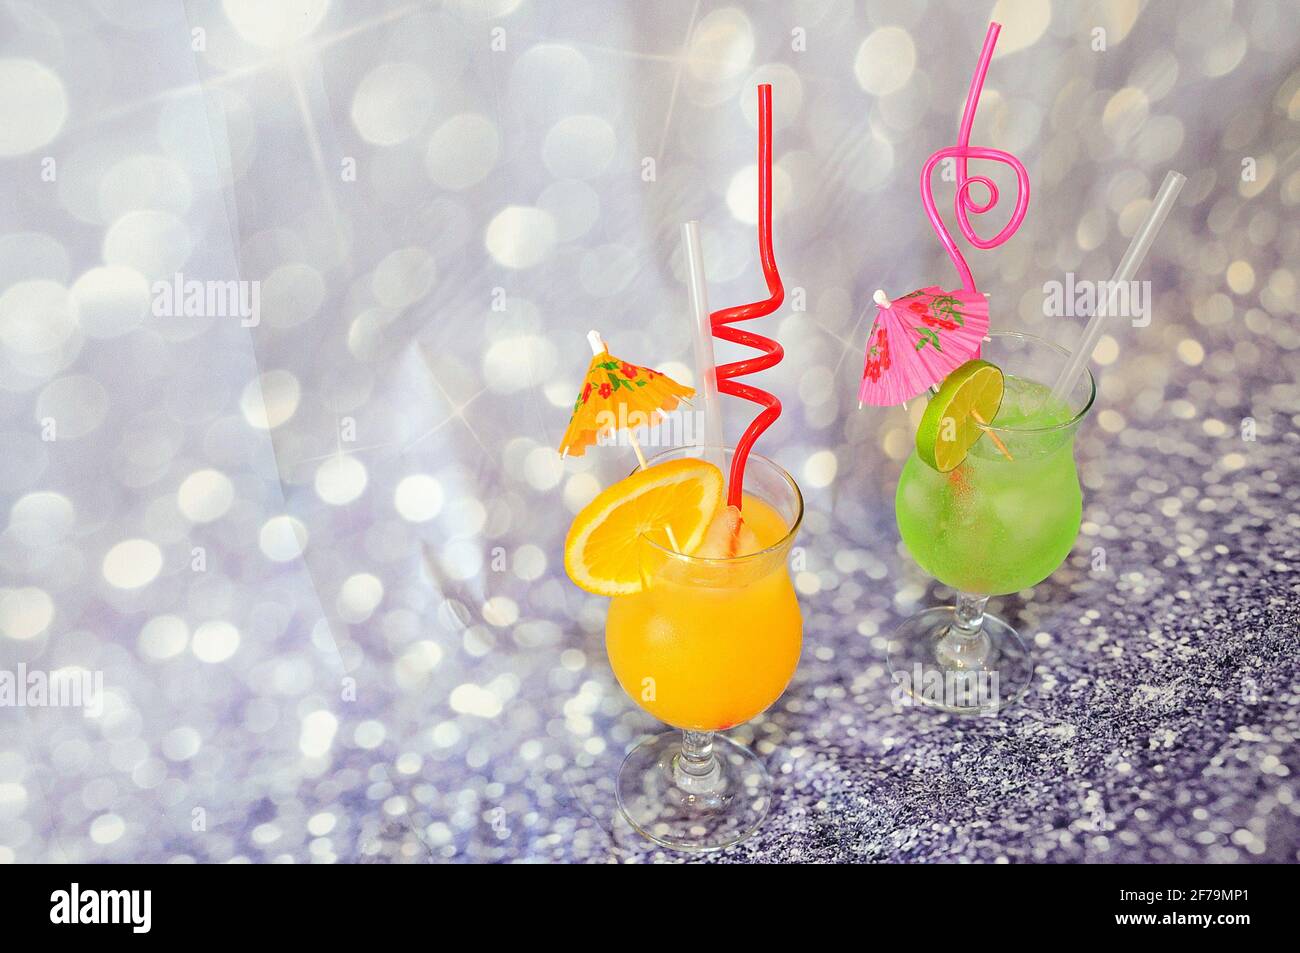 Deux verres de jus d'orange et de citron vert, décorés de parasols et de tubes à glace, ainsi que de tranches d'agrumes sur fond gris. Gros plan. Banque D'Images